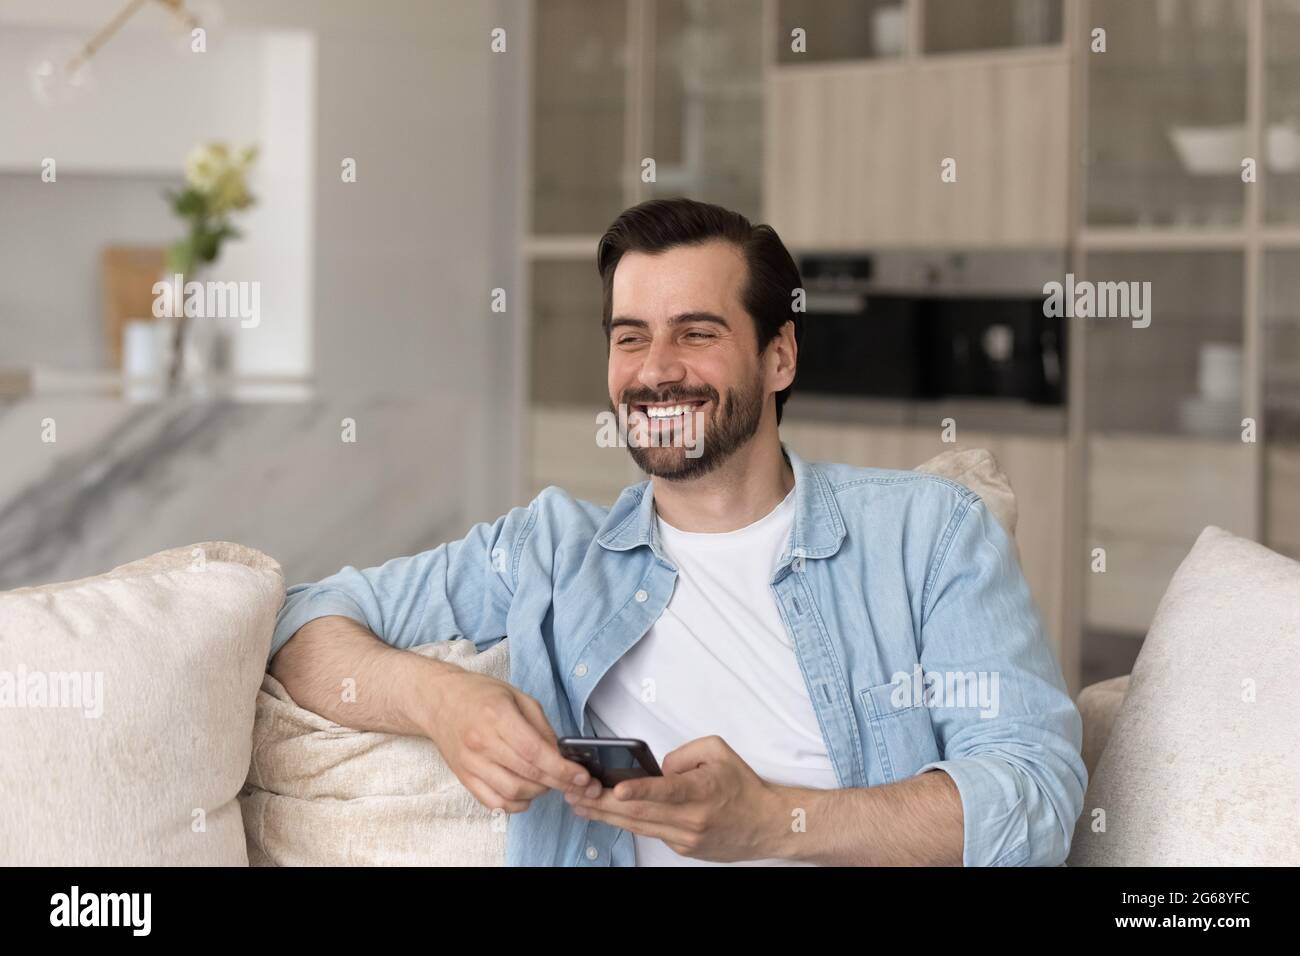 Überglücklich lachender junger Mann lenkte vom Smartphone ab, das auf der Couch saß Stockfoto